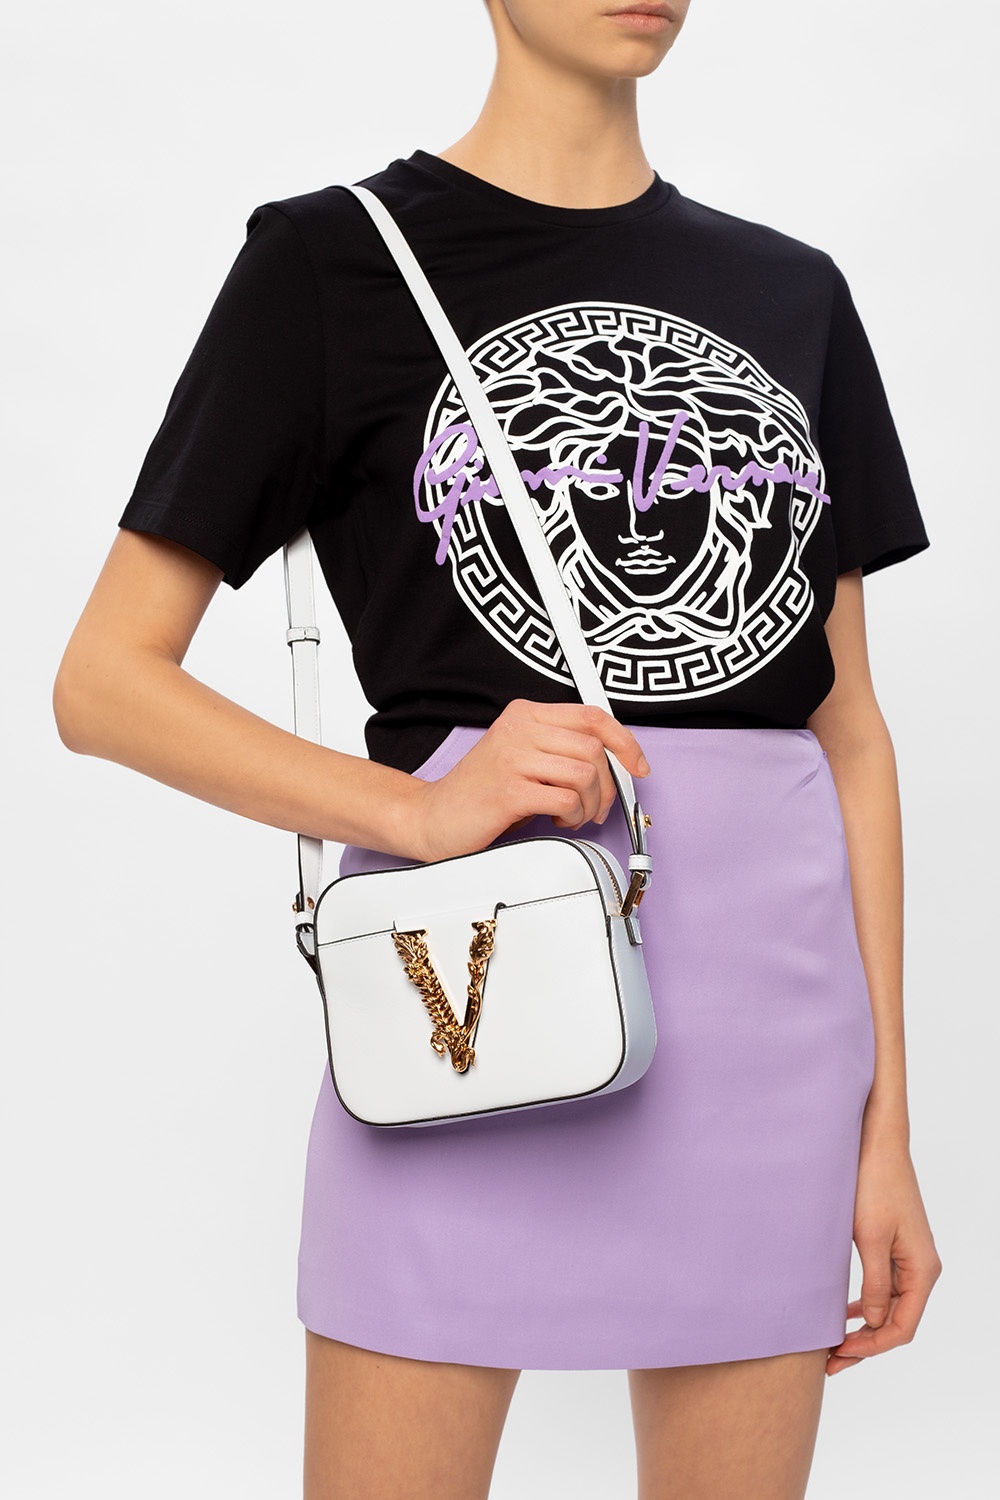 Versace, Bags, Versace White Virtus Handbag